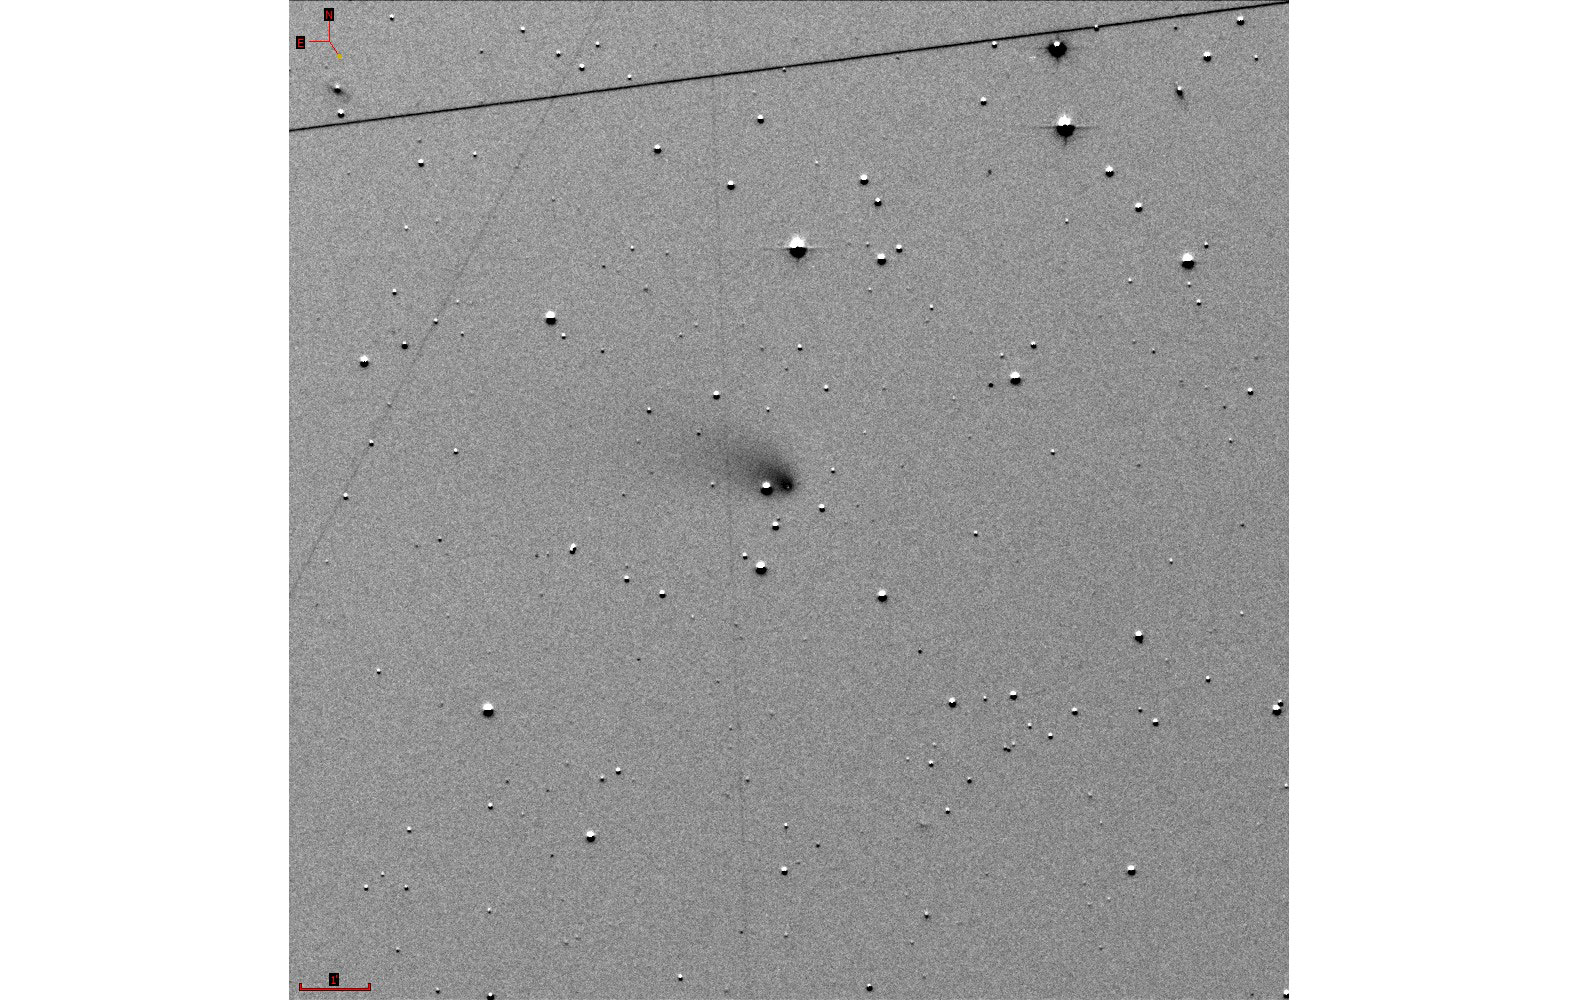 Комета C/2022 E3 (ZTF) на снимке обсерватории Азиаго (Италия). Фото © Wikipedia